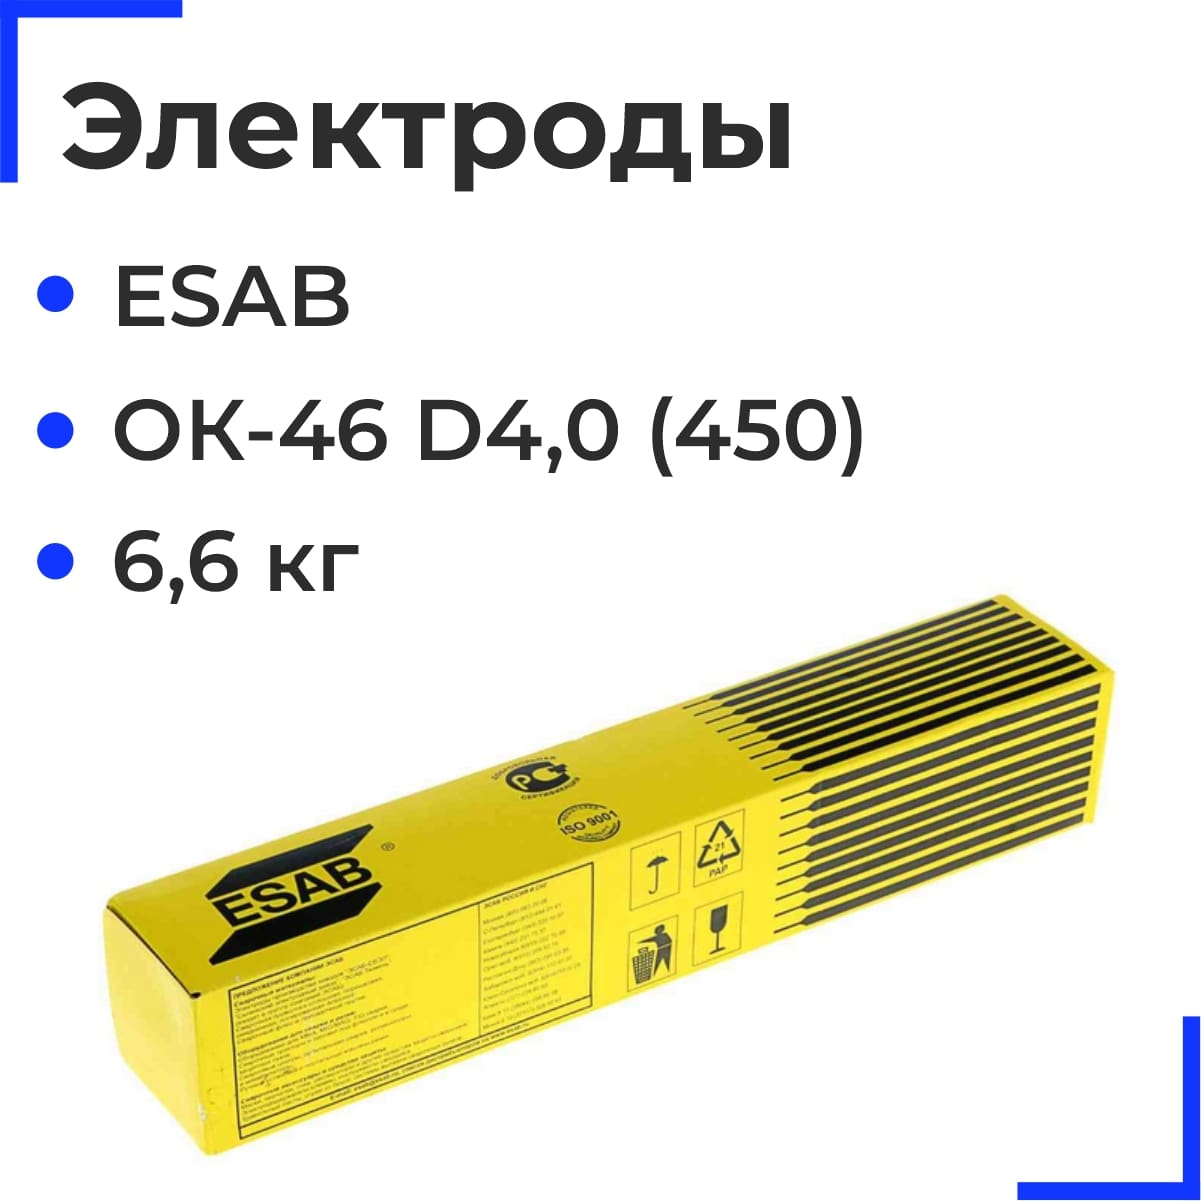 ОК-46 D4,0 (450) Электроды ESAB (6,6 кг)